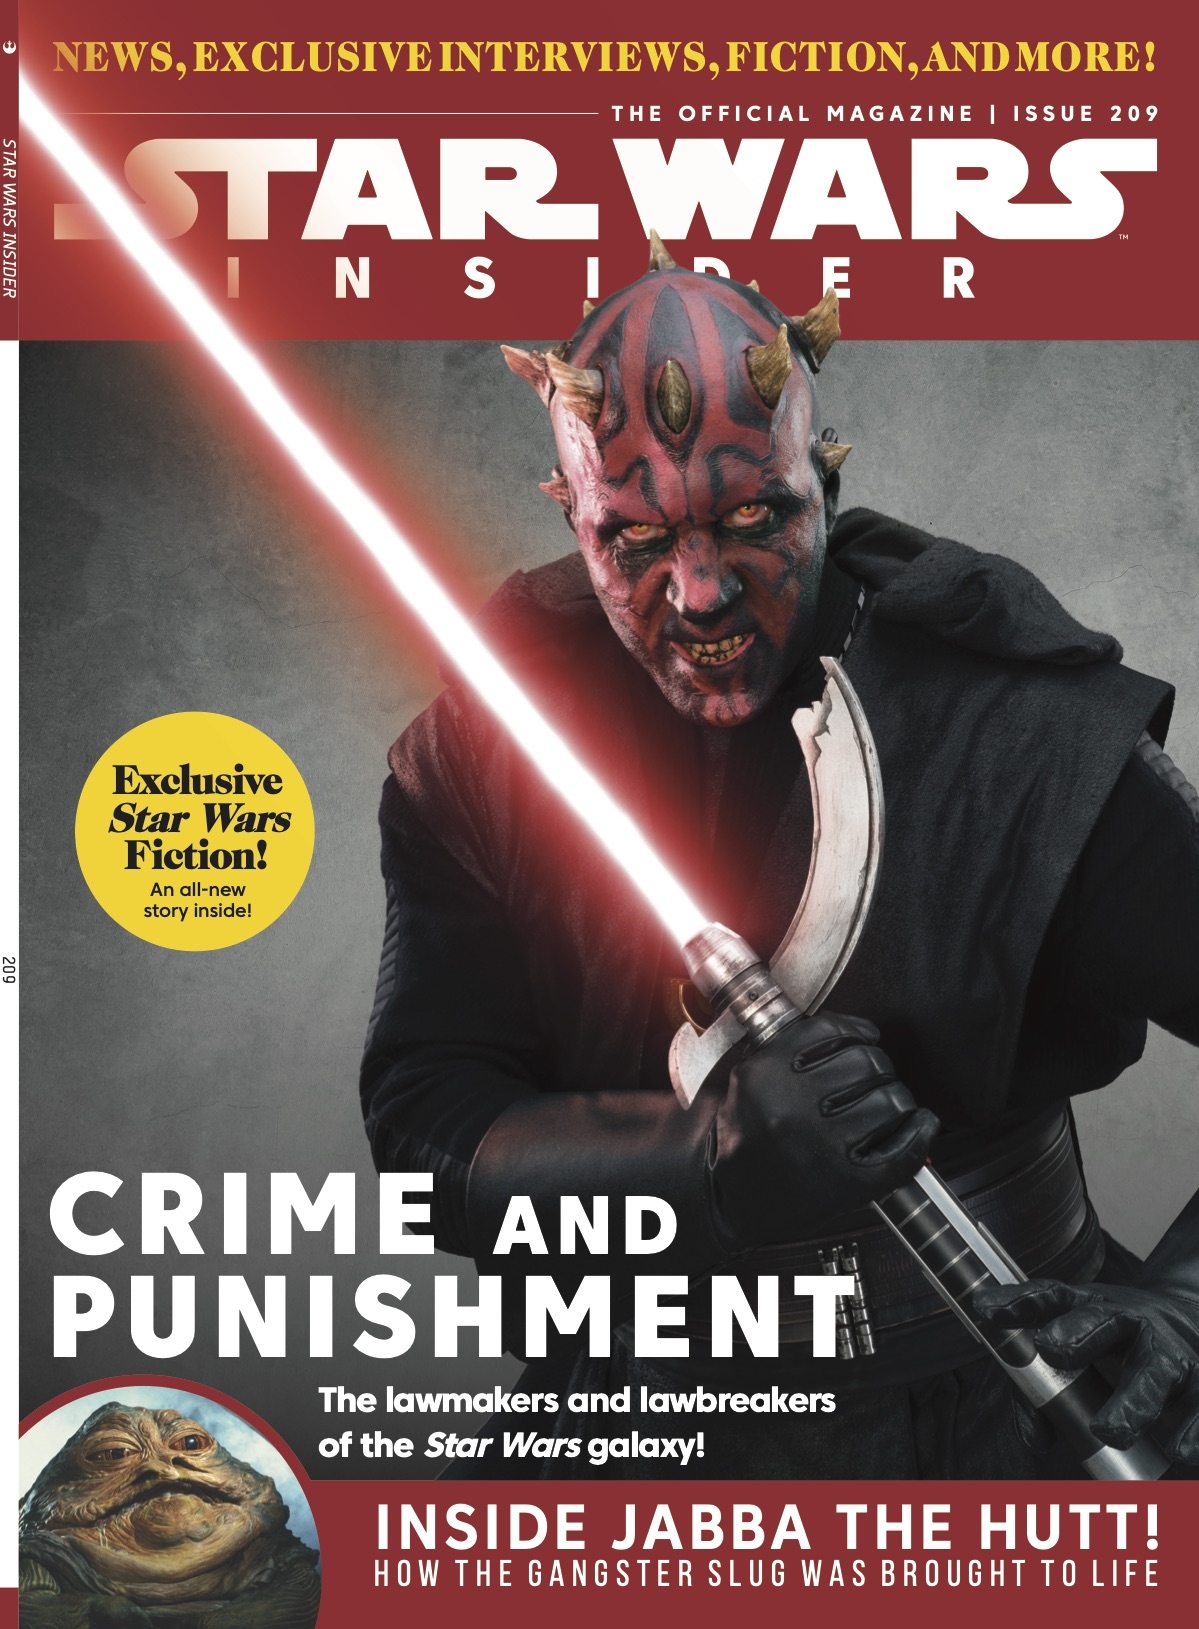 Star Wars Insider #209 Newsstand Edition